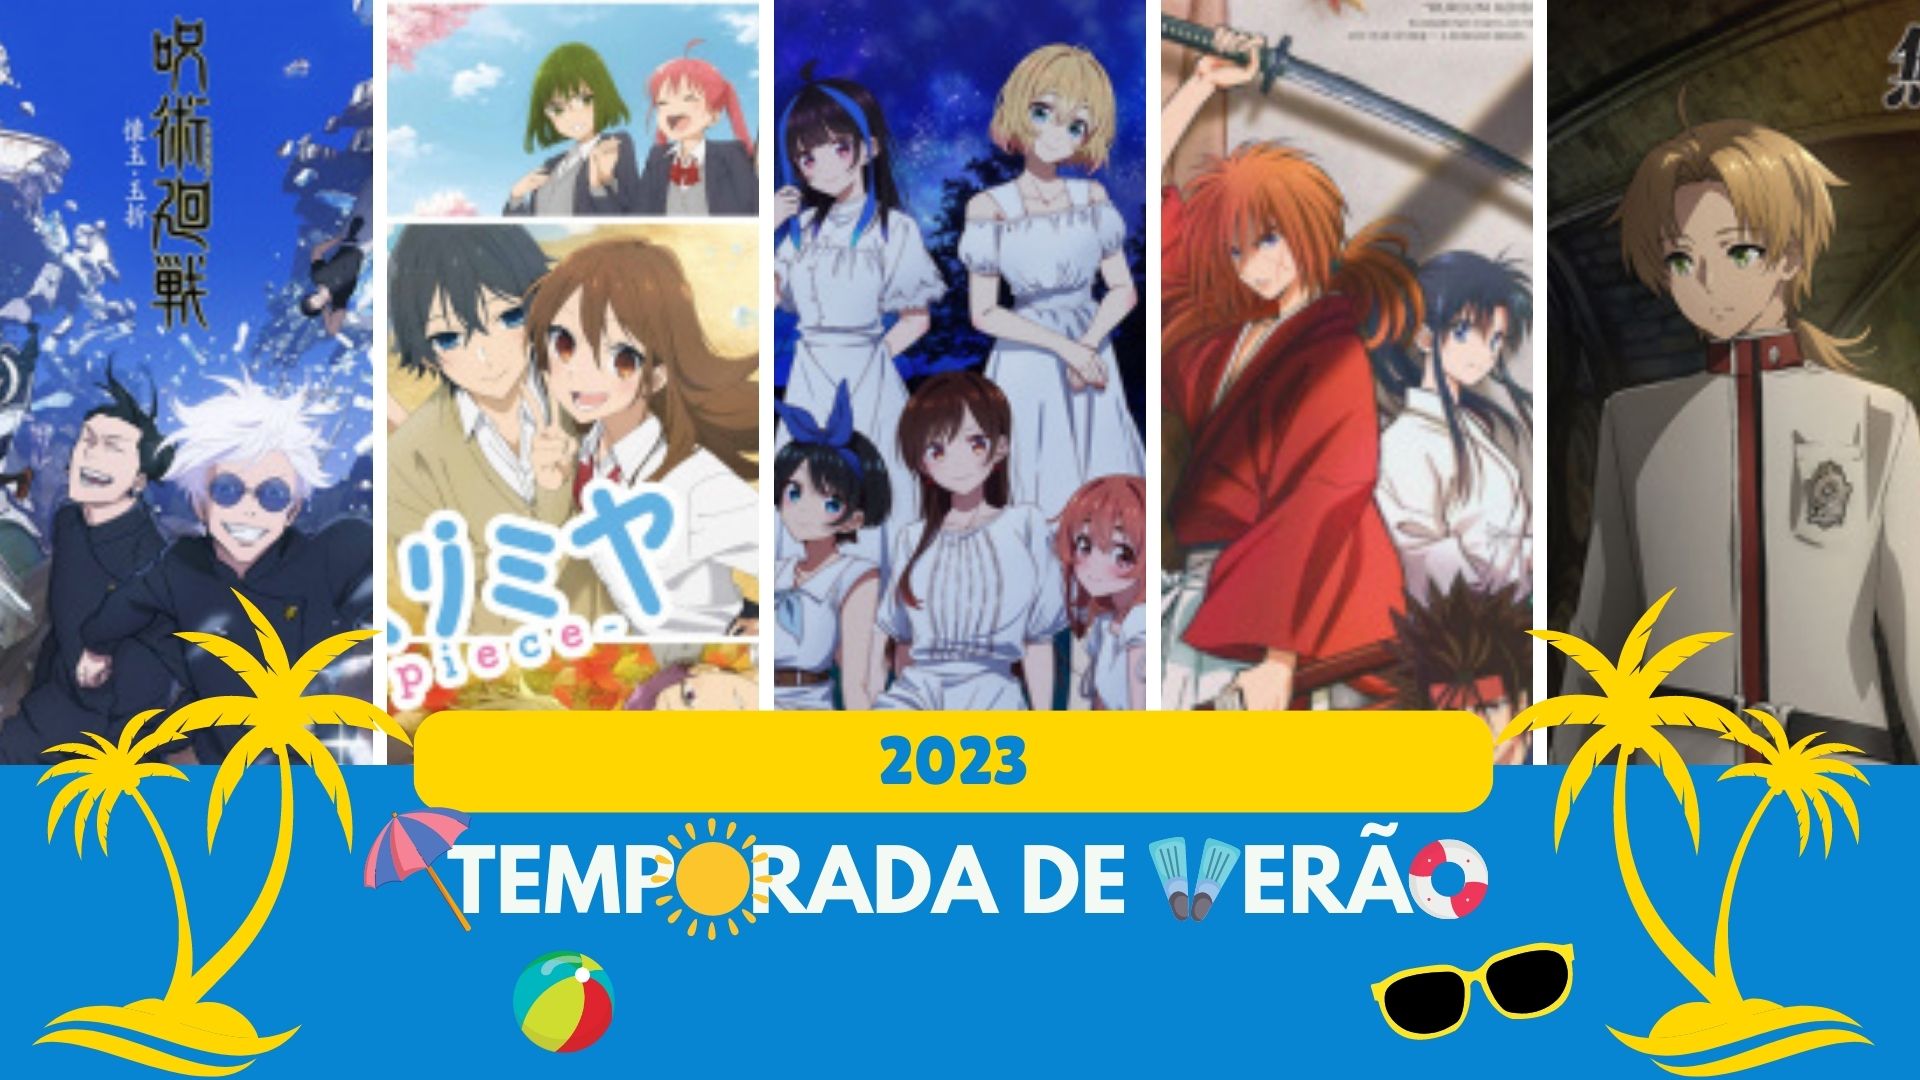 Confira os principais animes que chegam na temporada de verão 2019!